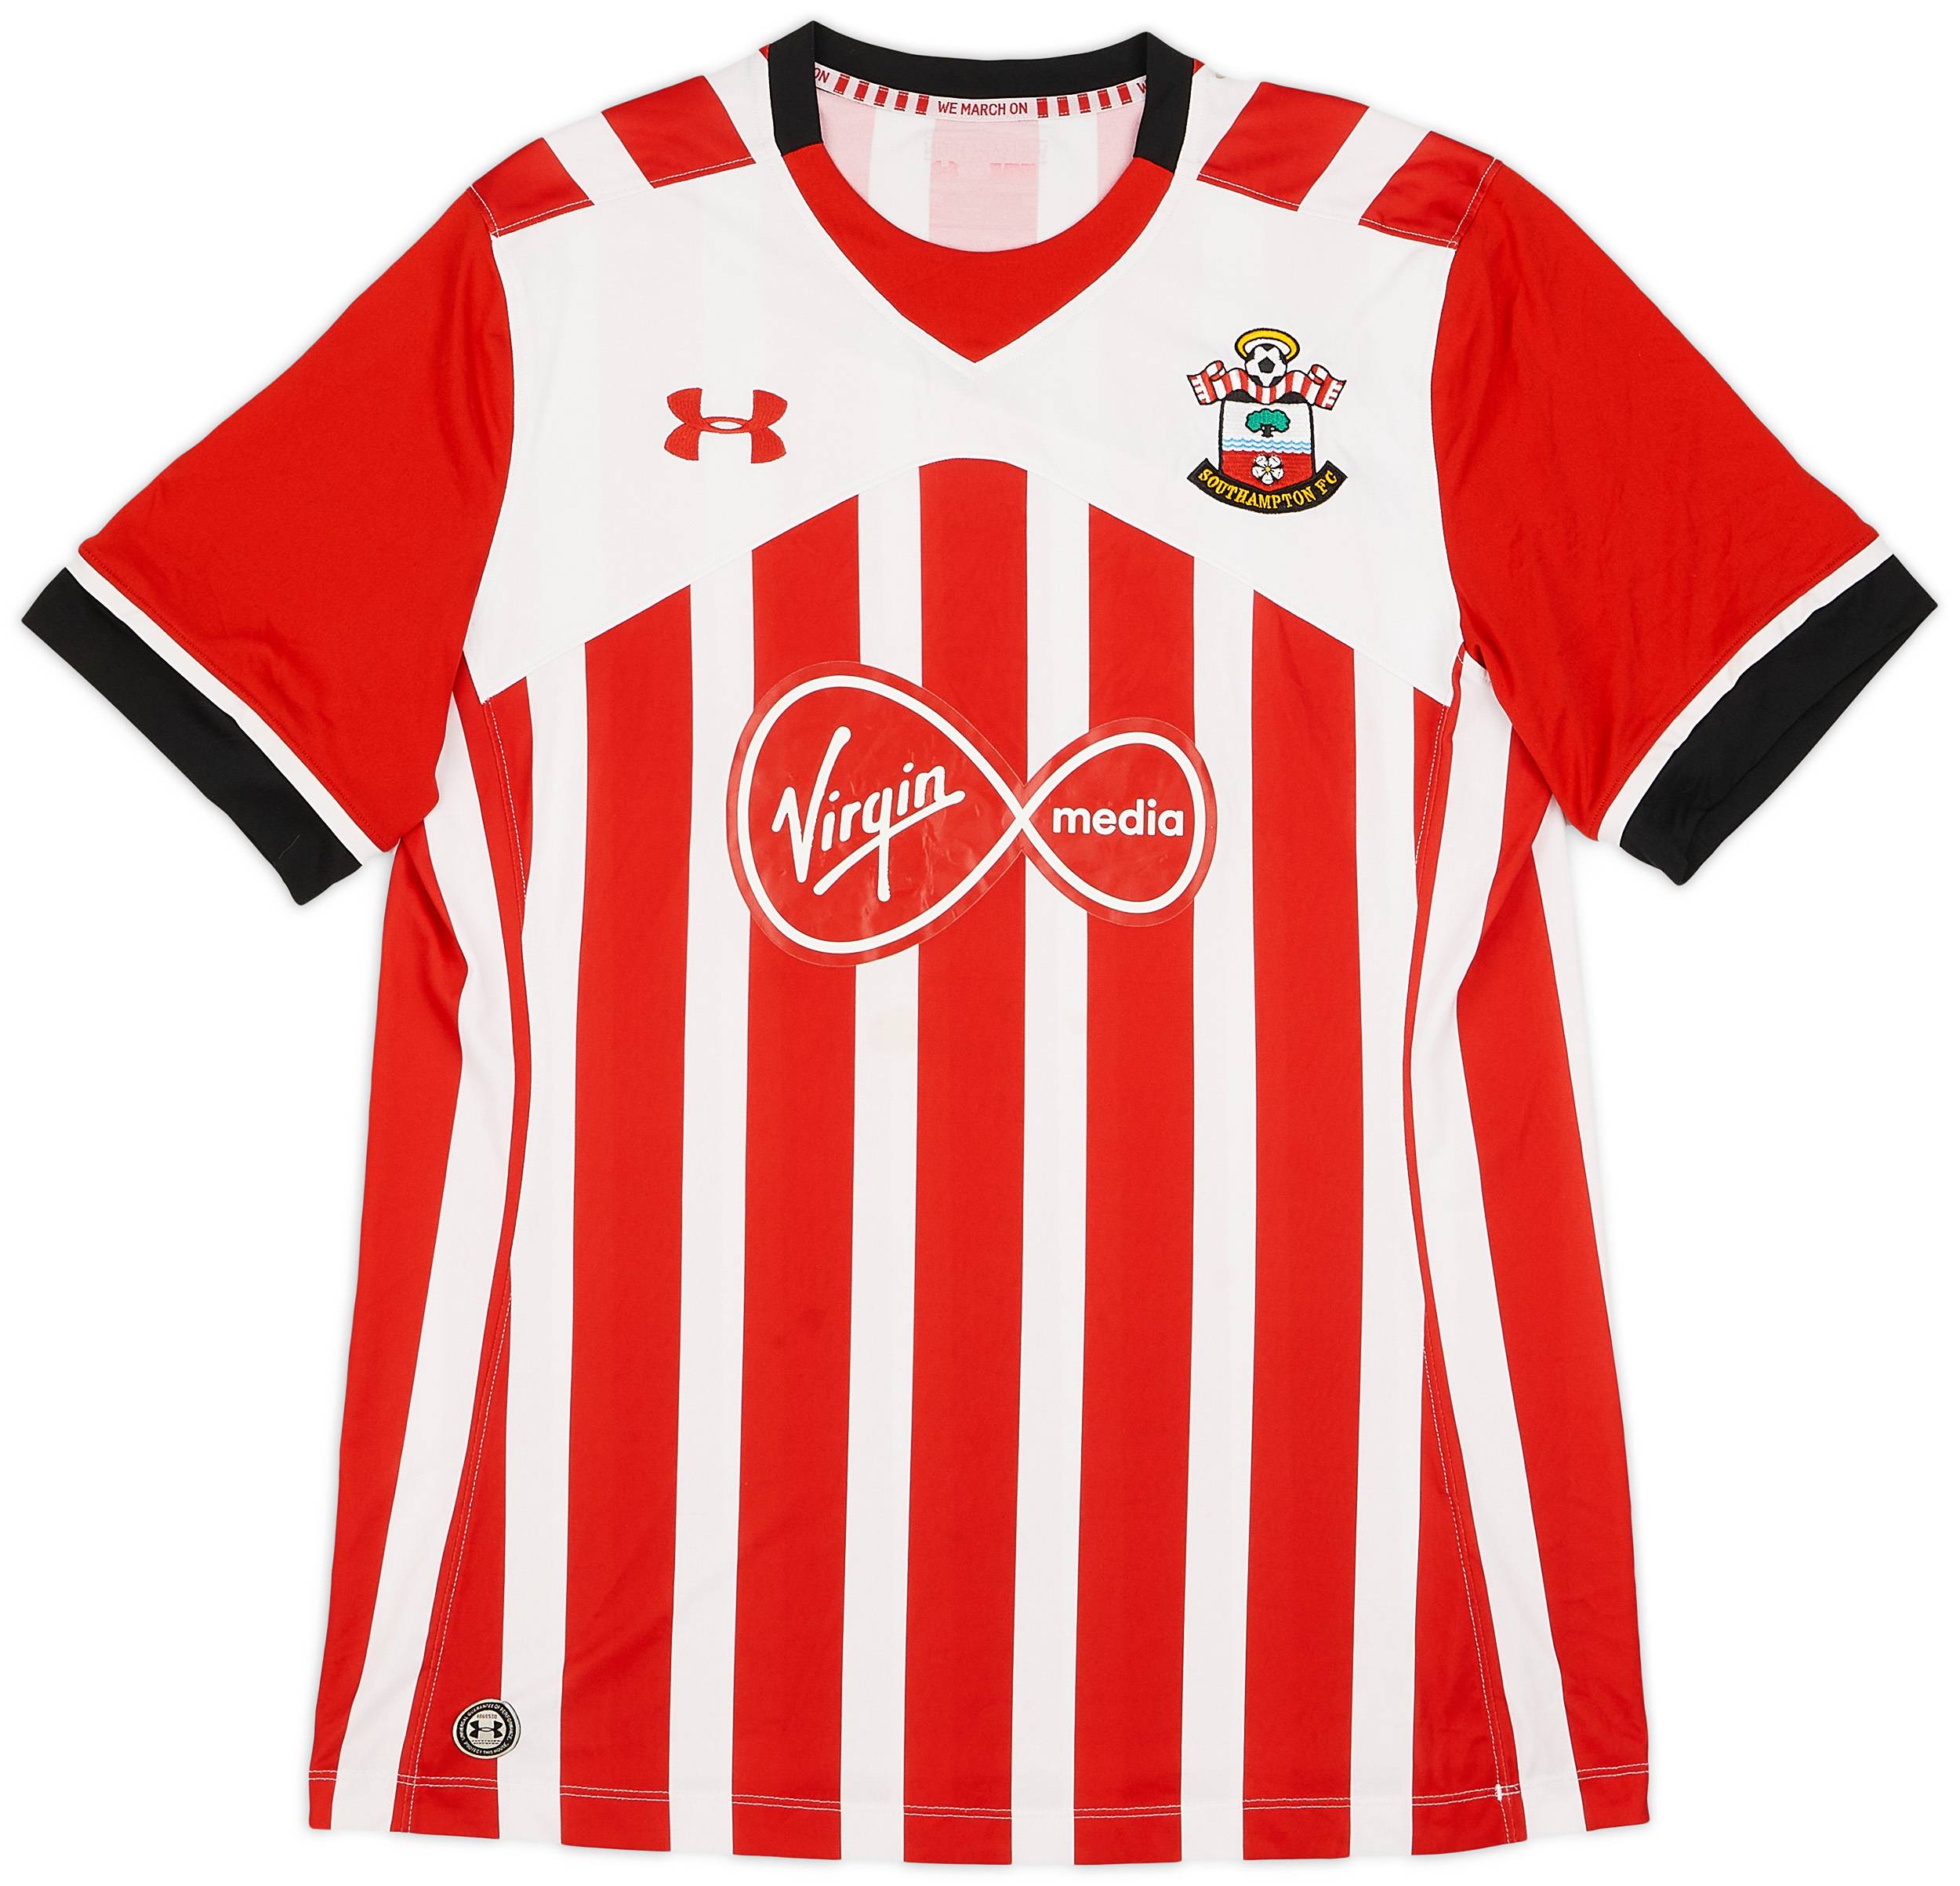 2016-17 Southampton Home Shirt - 7/10 - (XL)